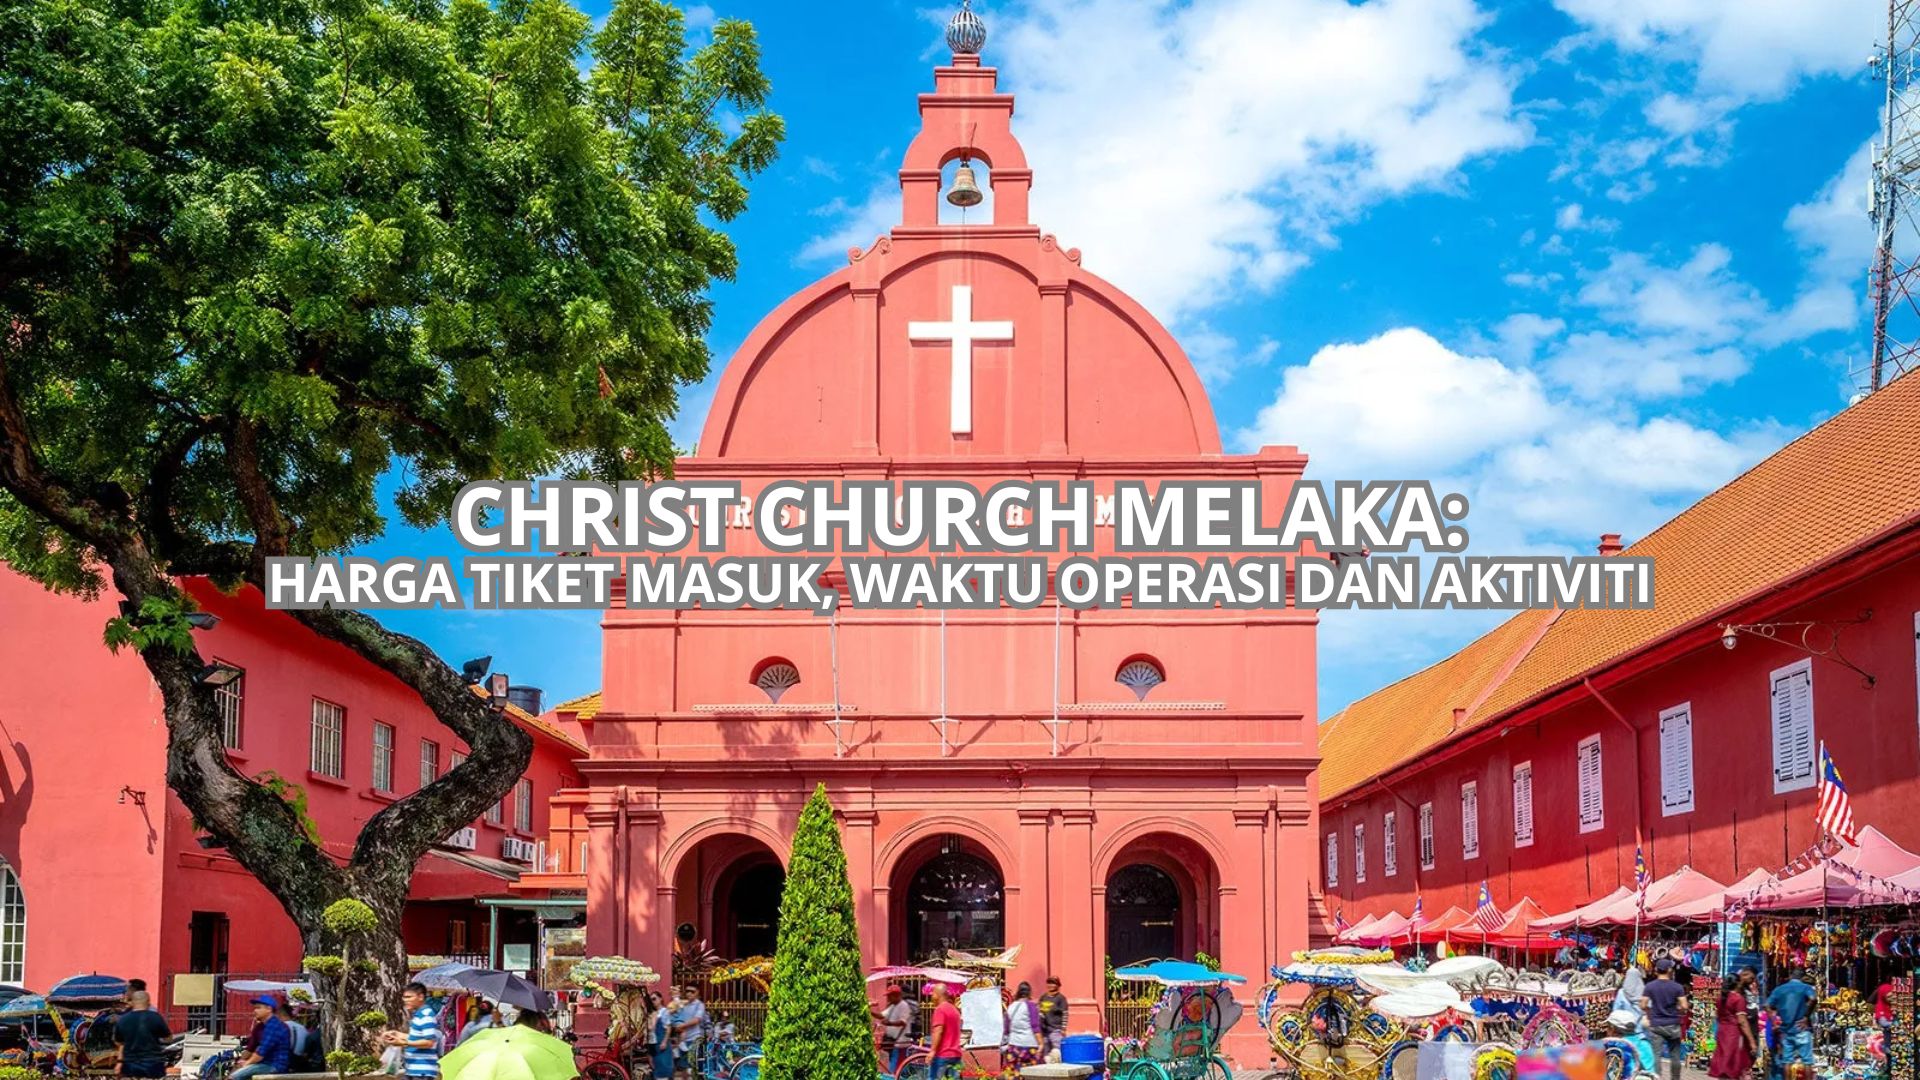 Christ Church Melaka Cover